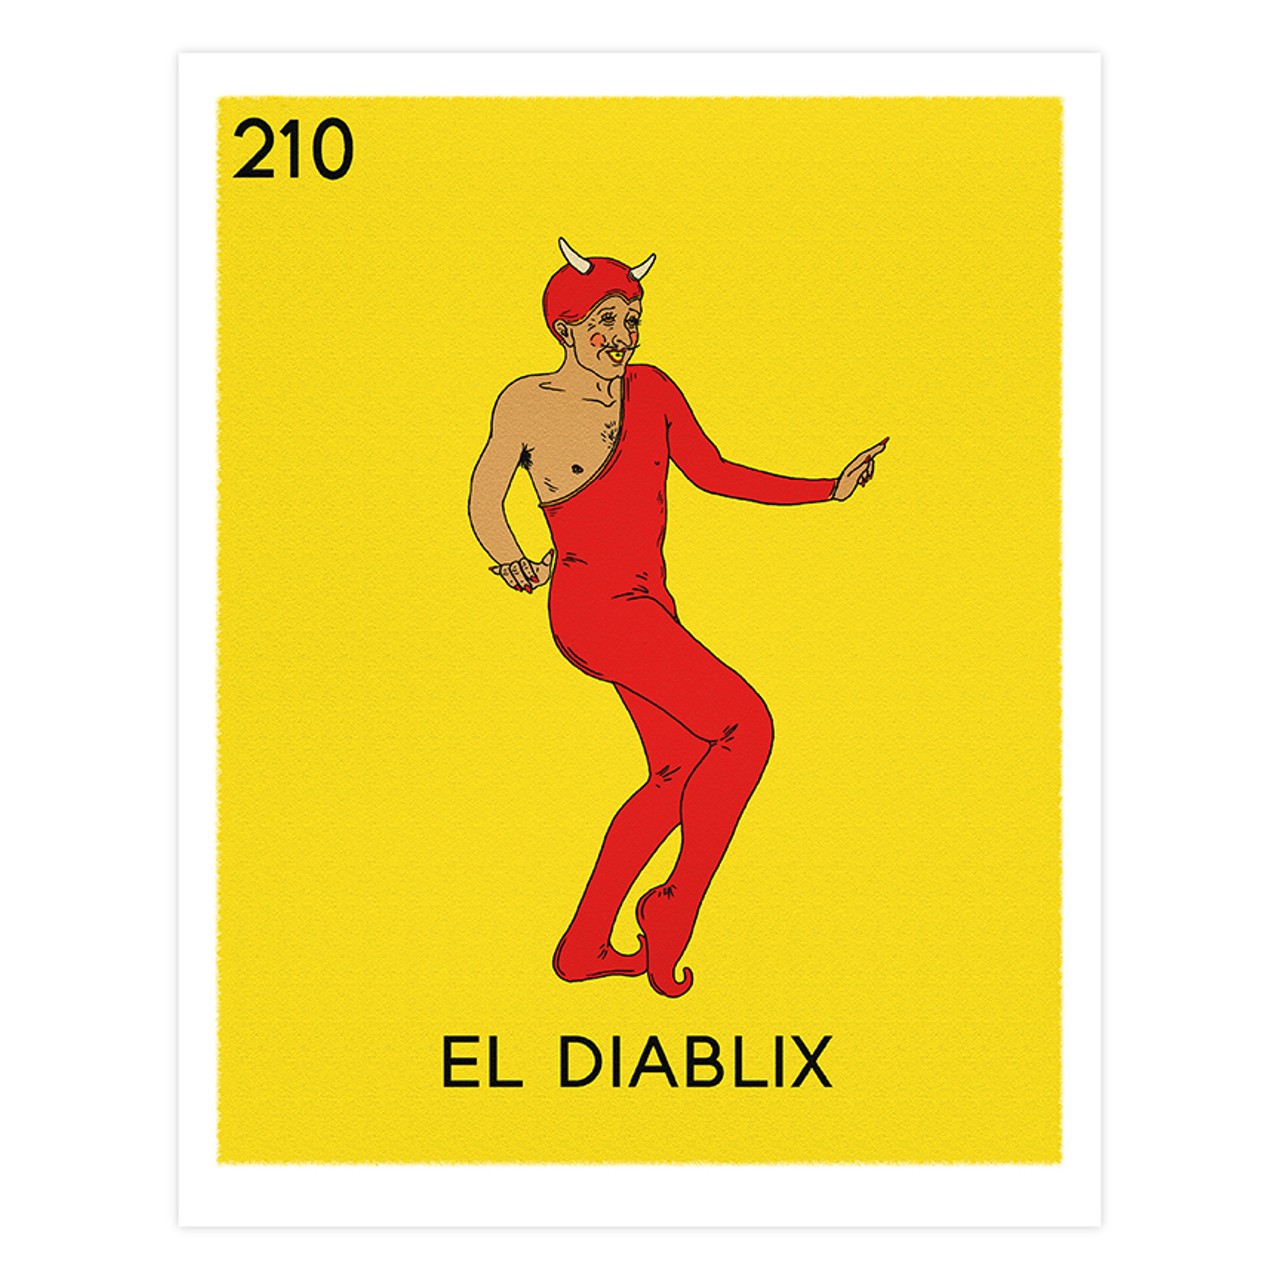 "El Diablix" by Ana Garcia